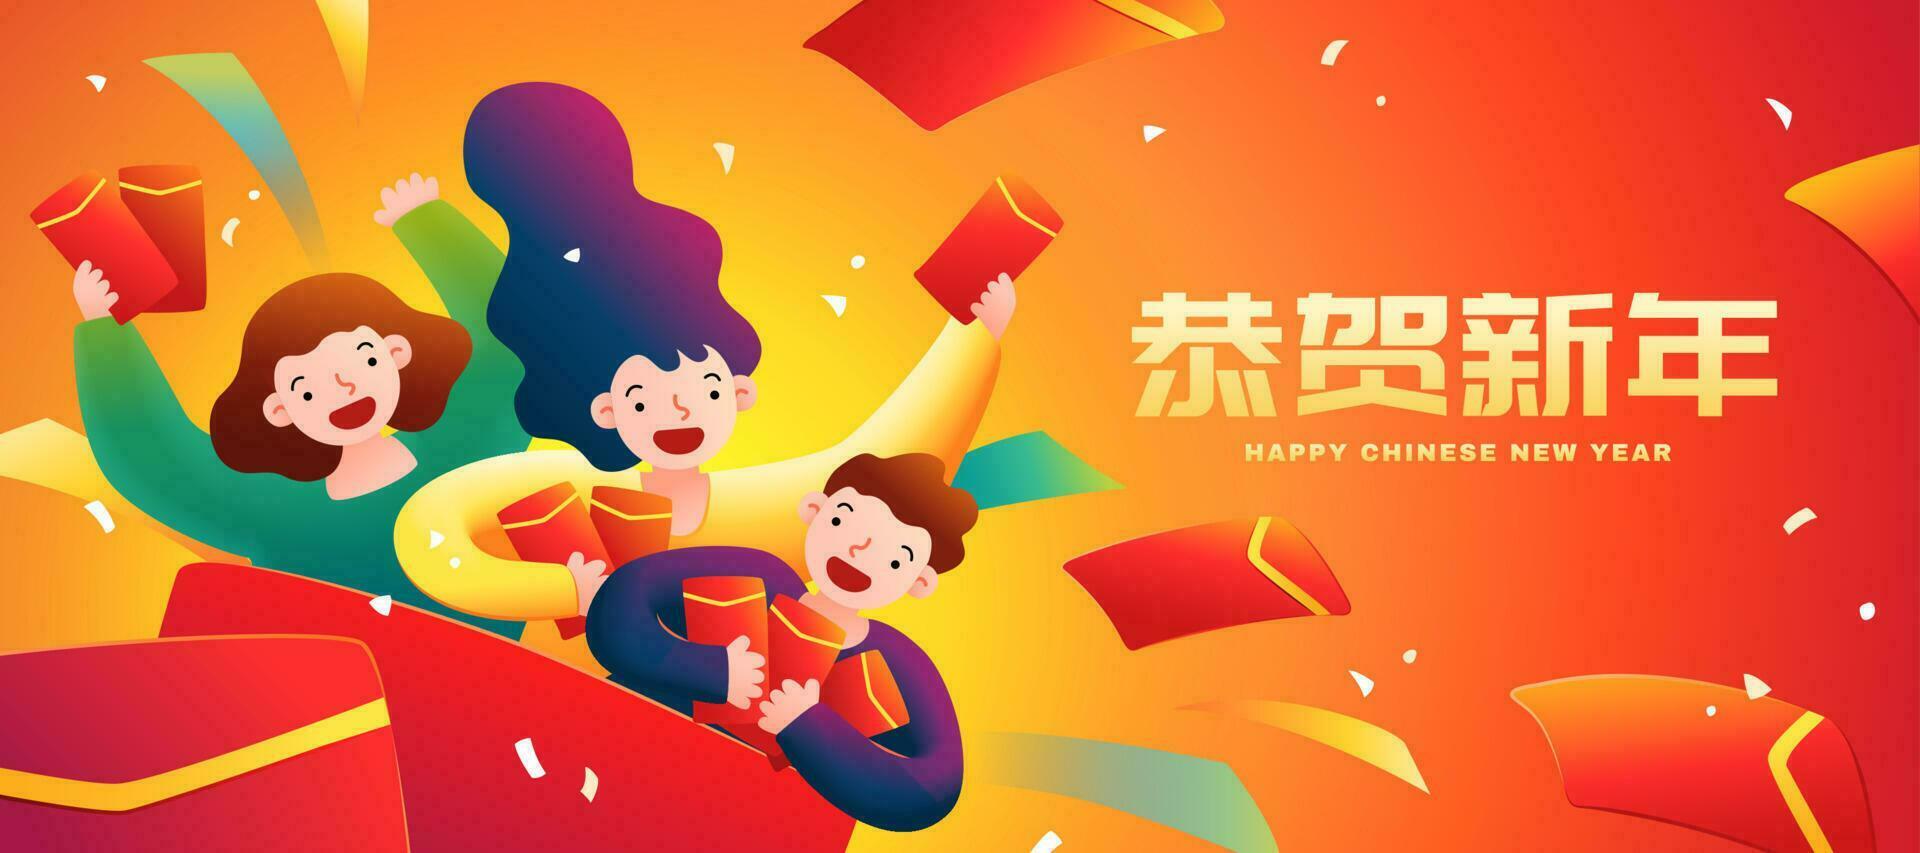 linda niños enviando rojo sobres a celebrar primavera festival, traducción, contento chino nuevo año vector